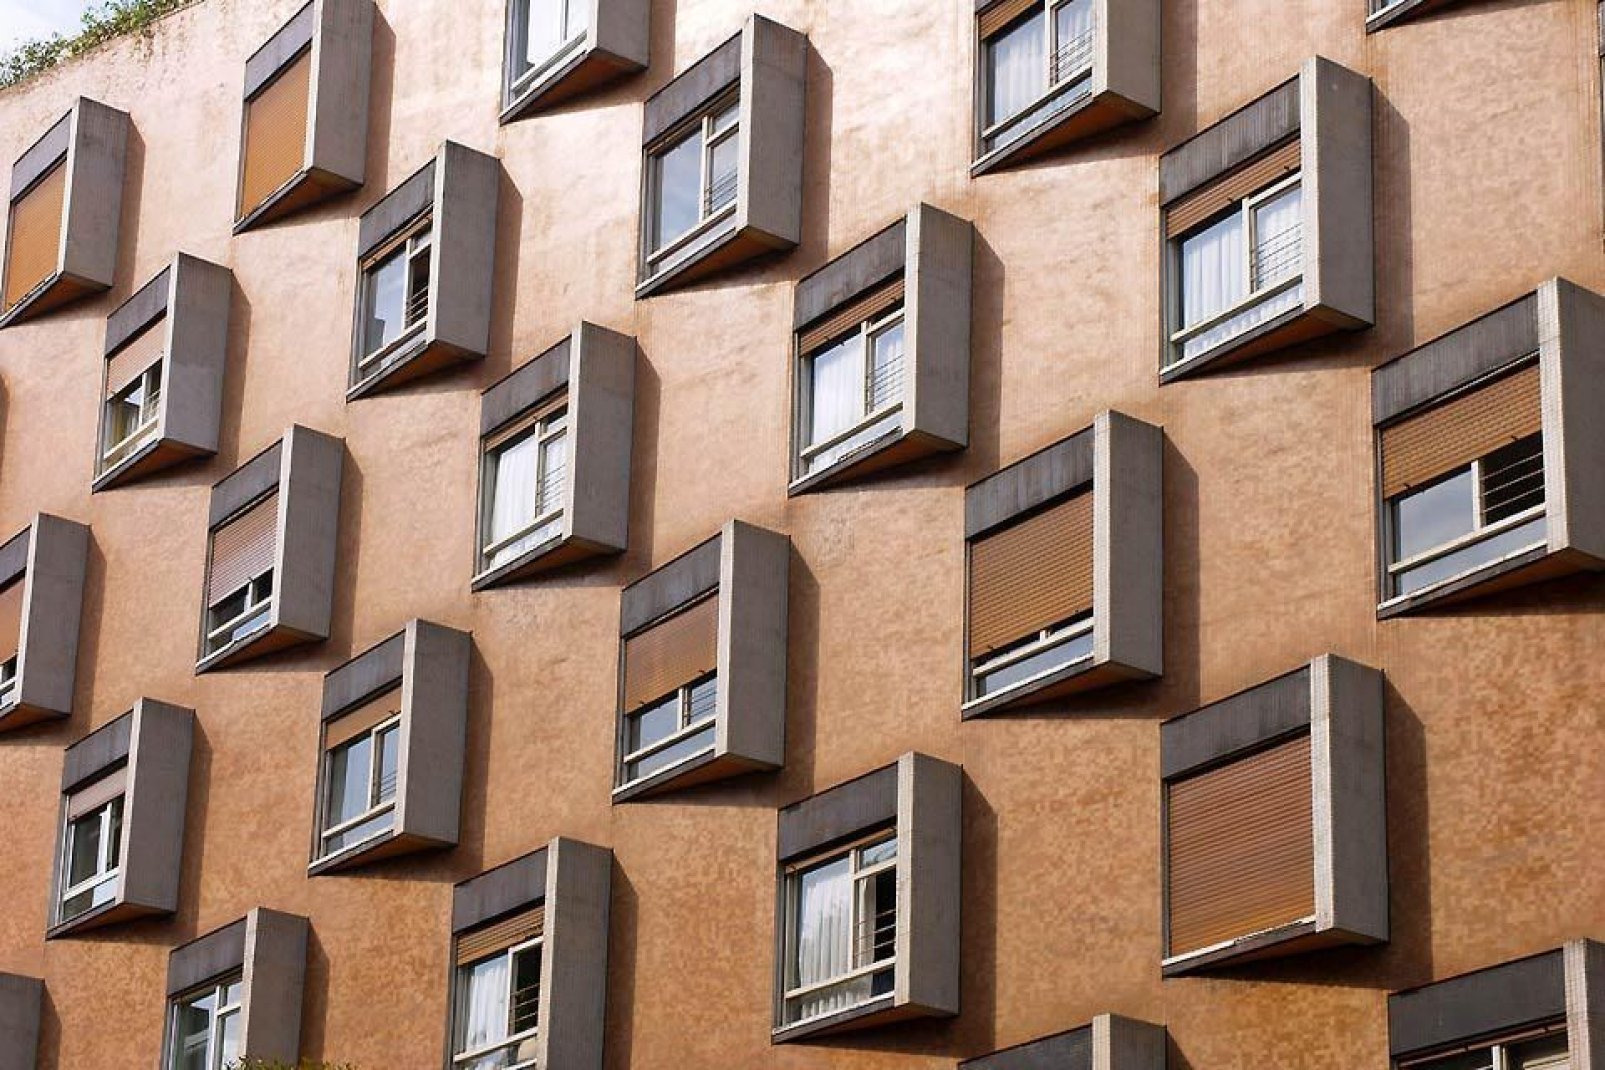 Dieses Bauwerk von Oviedo präsentiert eine erstaunlich moderne Architektur.